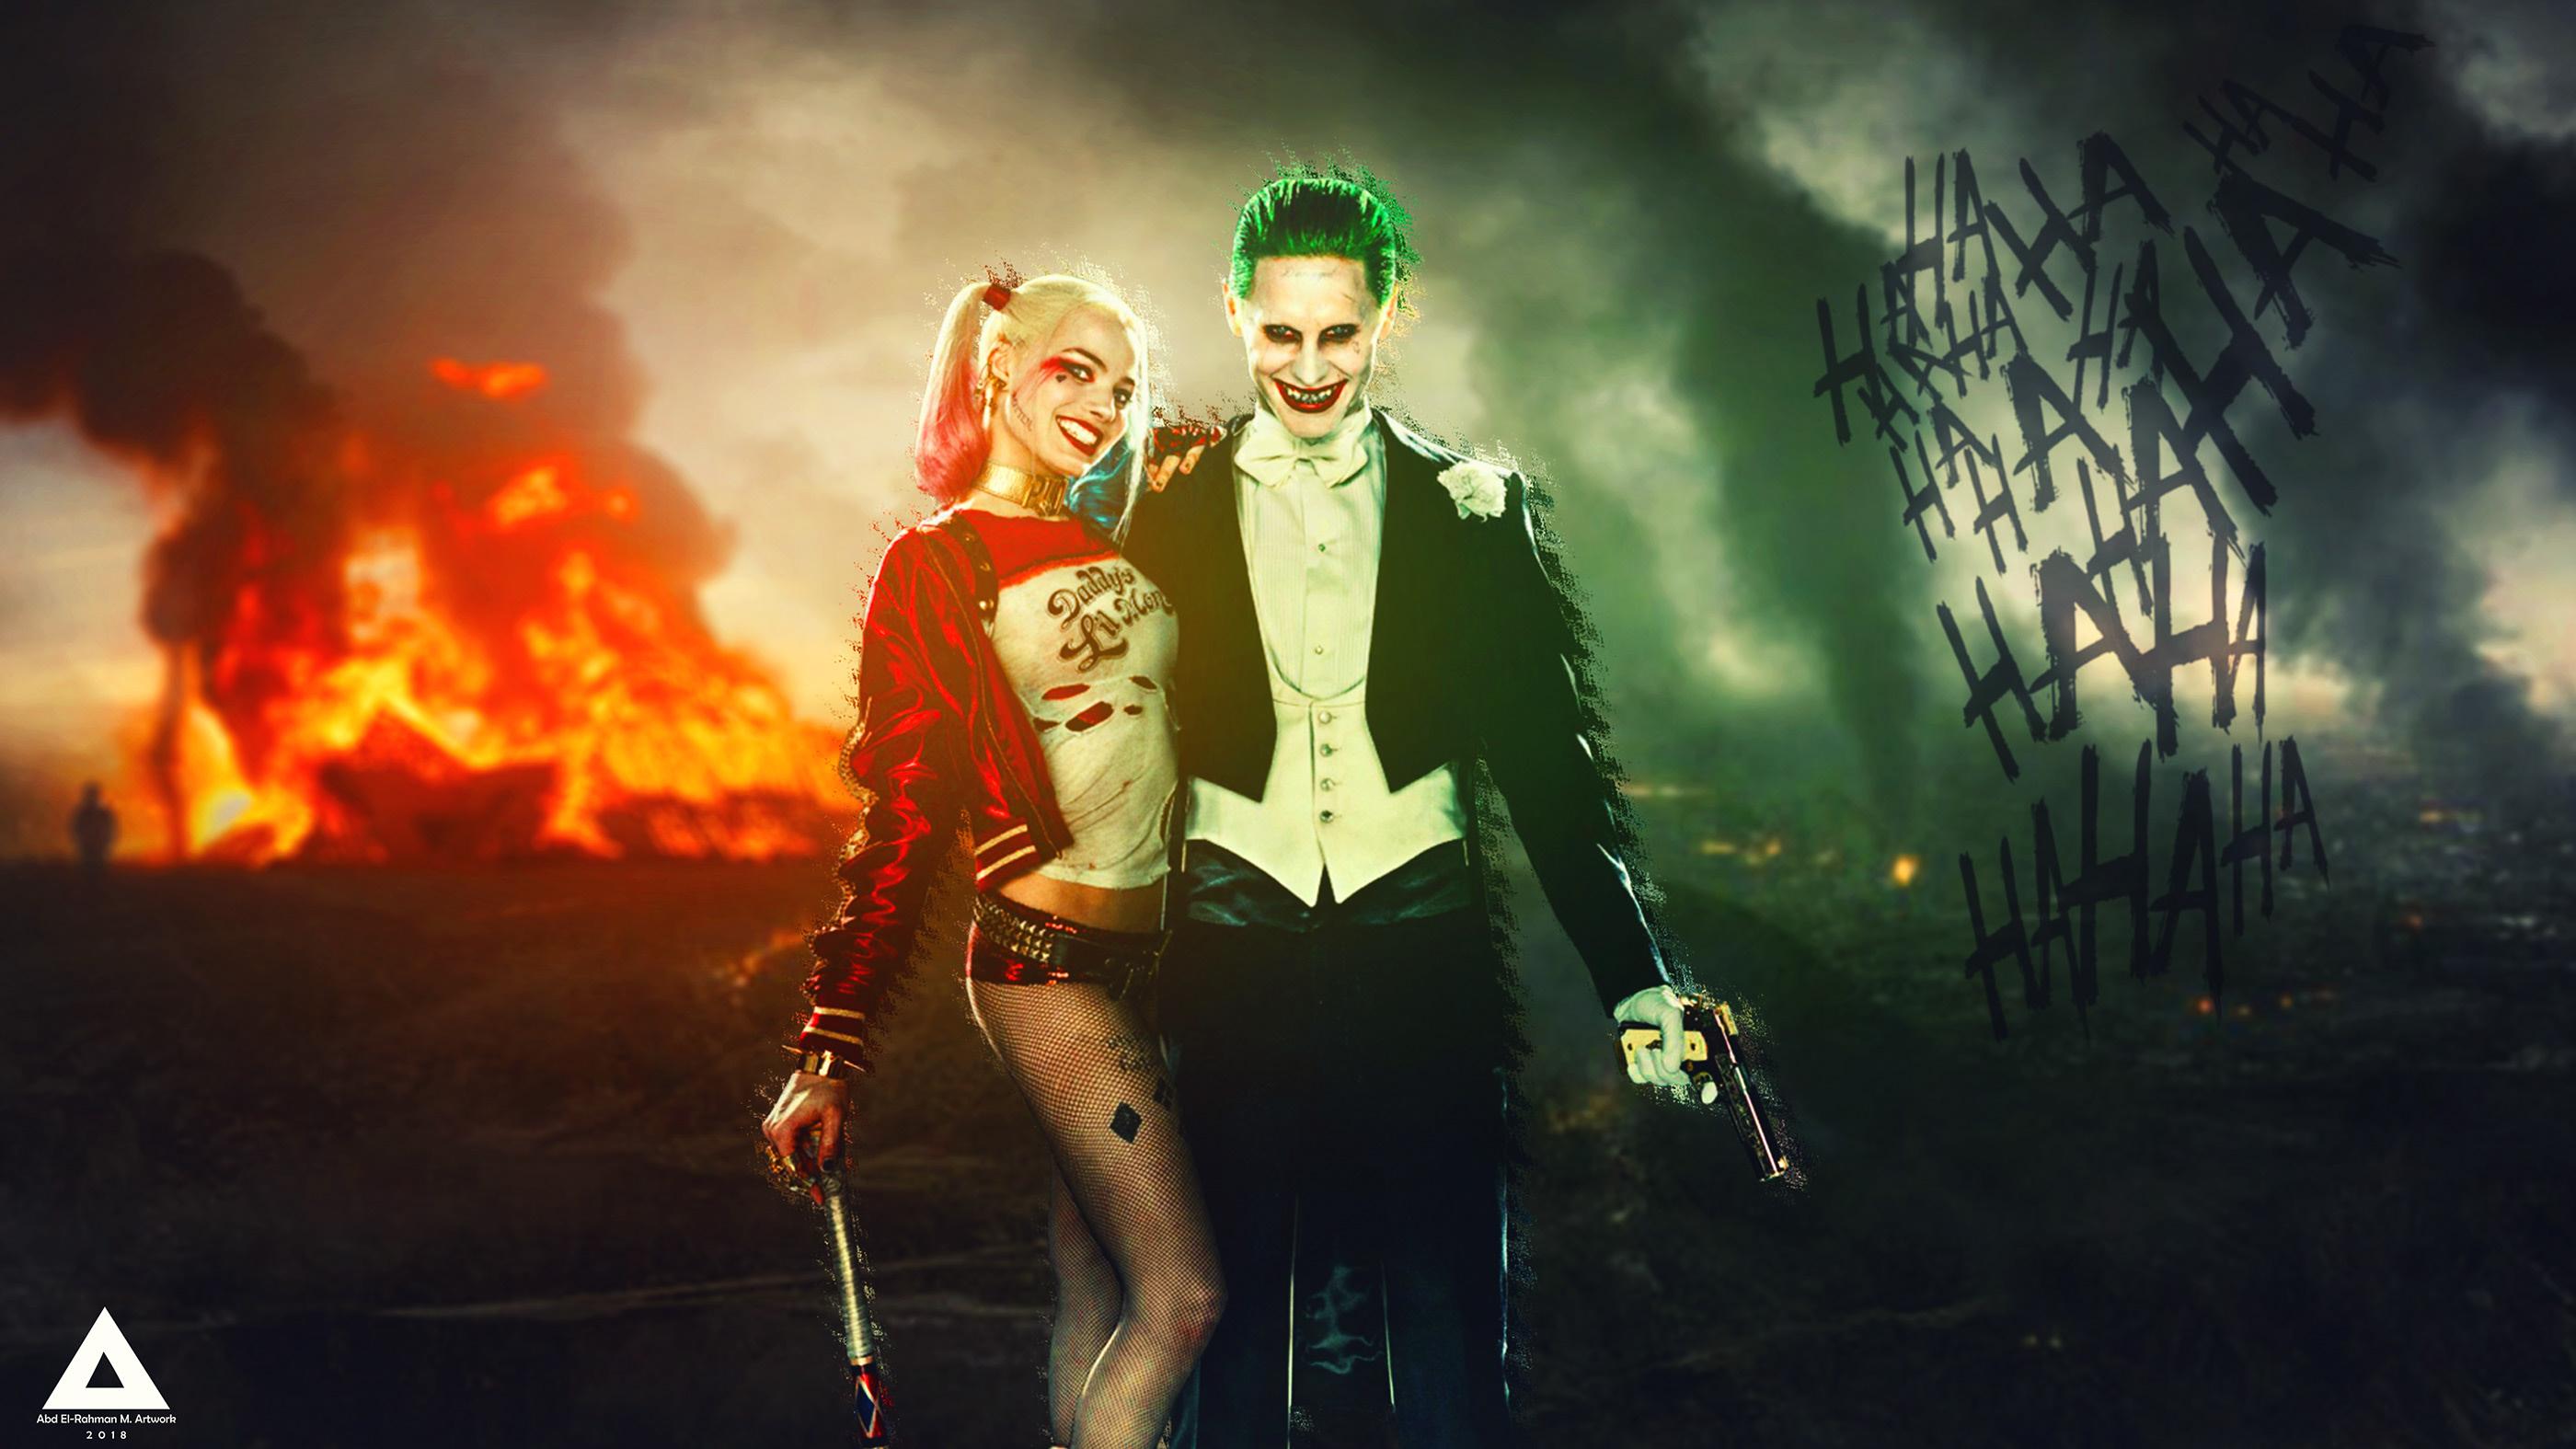 2800 x 1575 · jpeg - The Joker & Harley Quinn (4K Wallpaper) on Behance